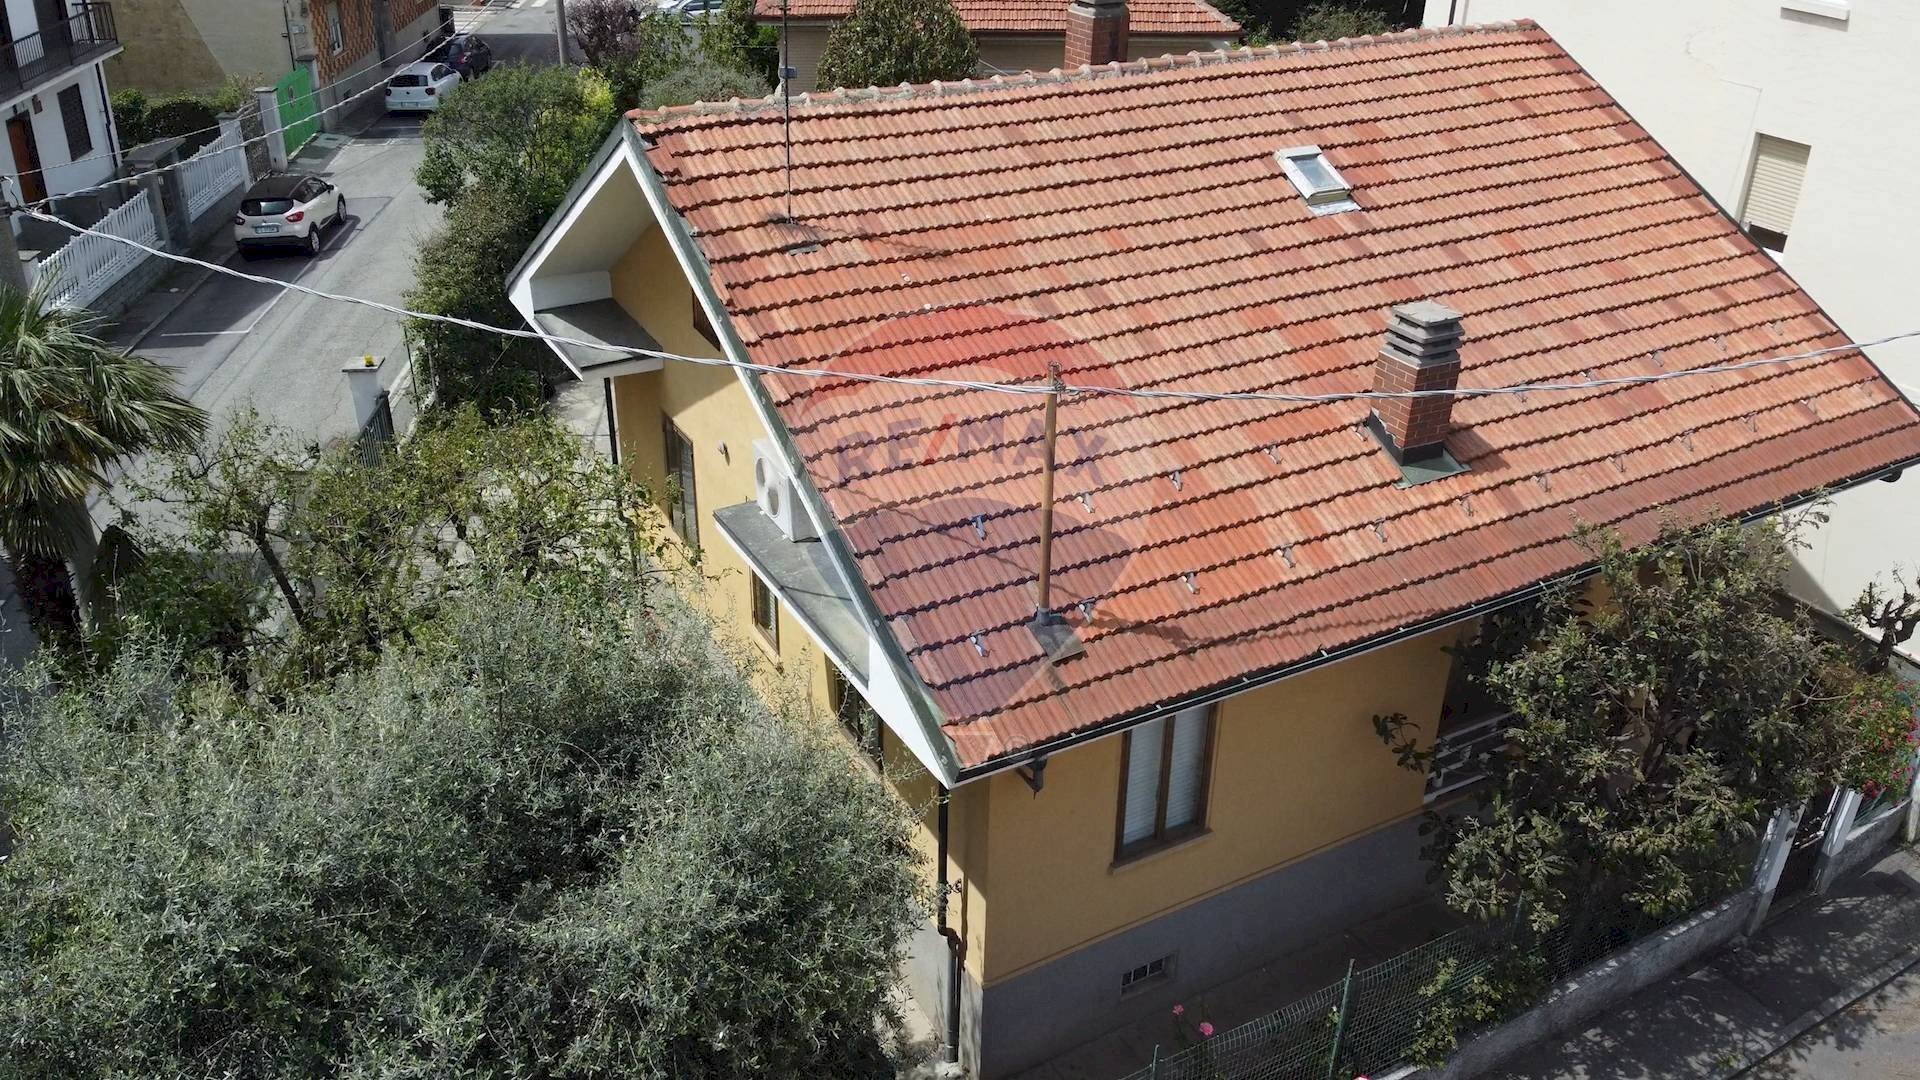 Vendita Casa indipendente via San Rocco, 29
Grugliasco, Grugliasco